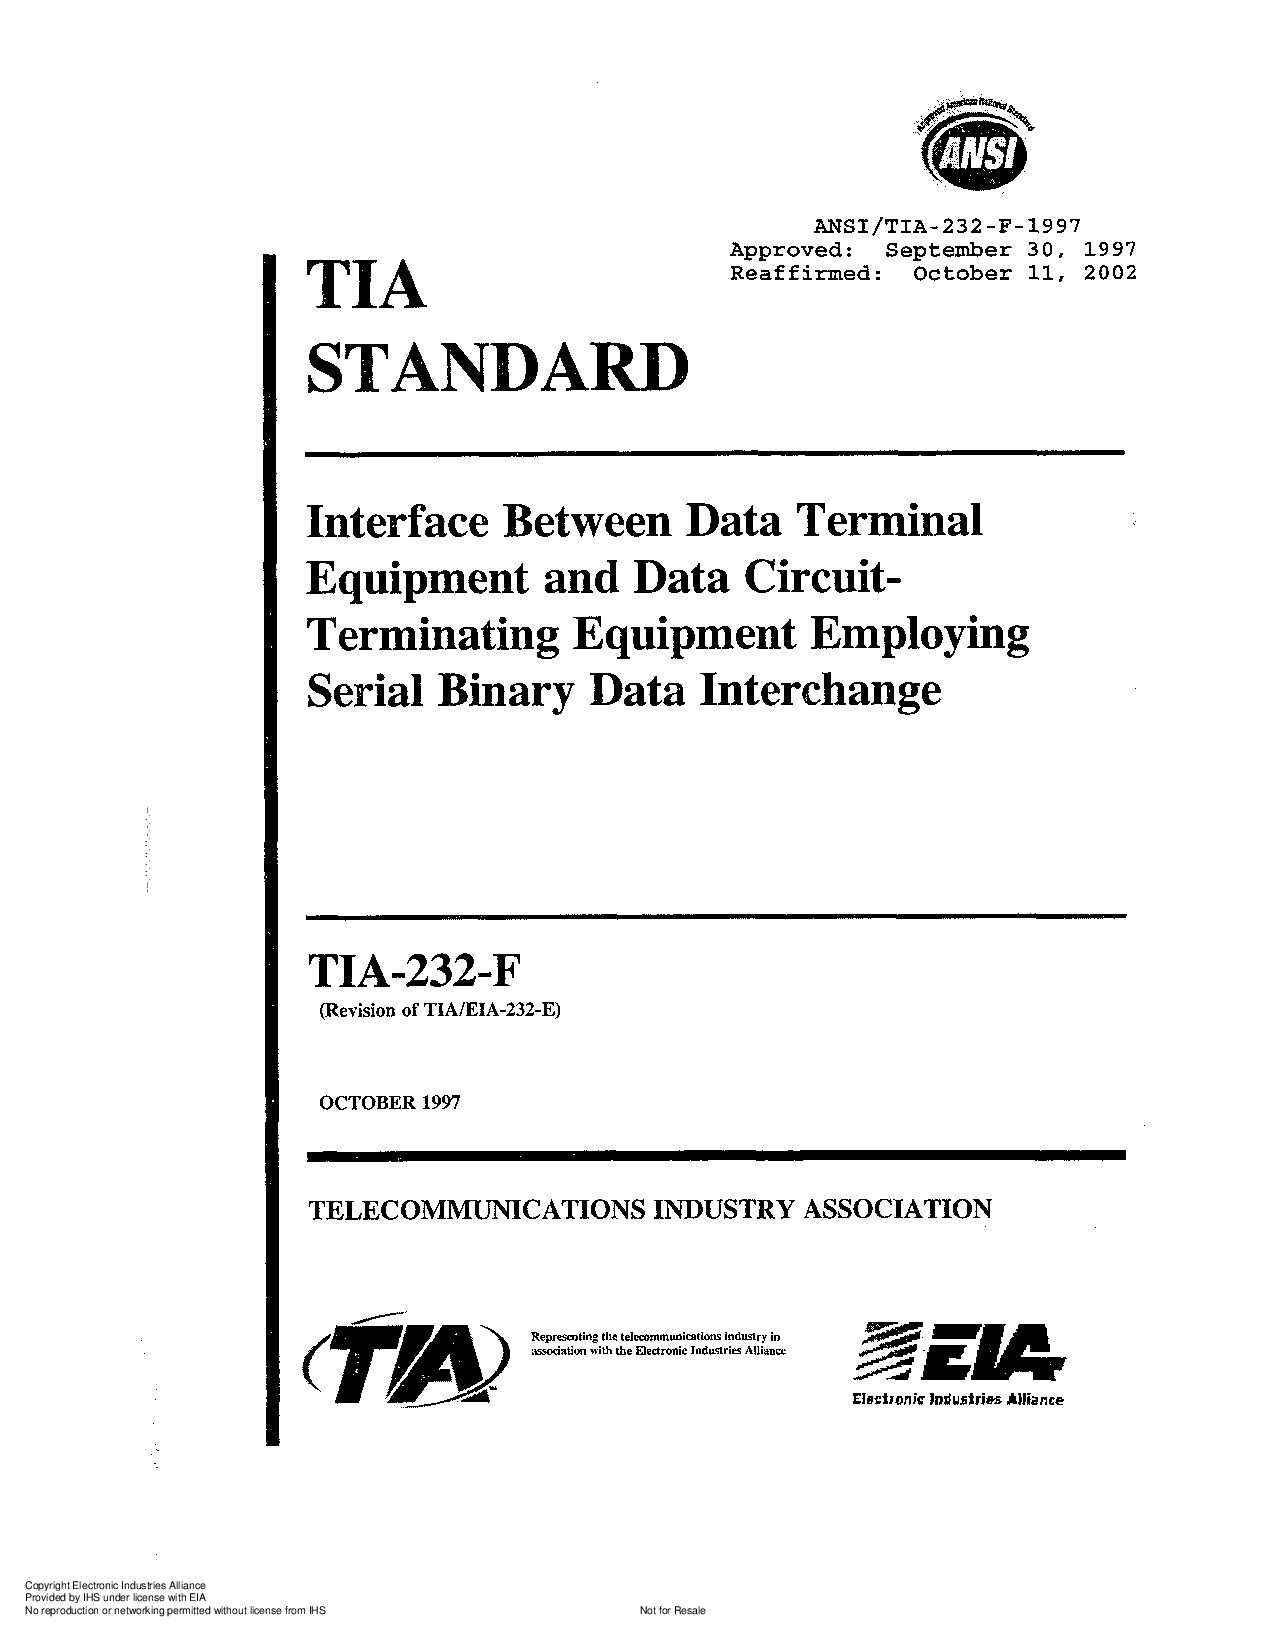 ANSI/TIA/EIA 232-F-1997